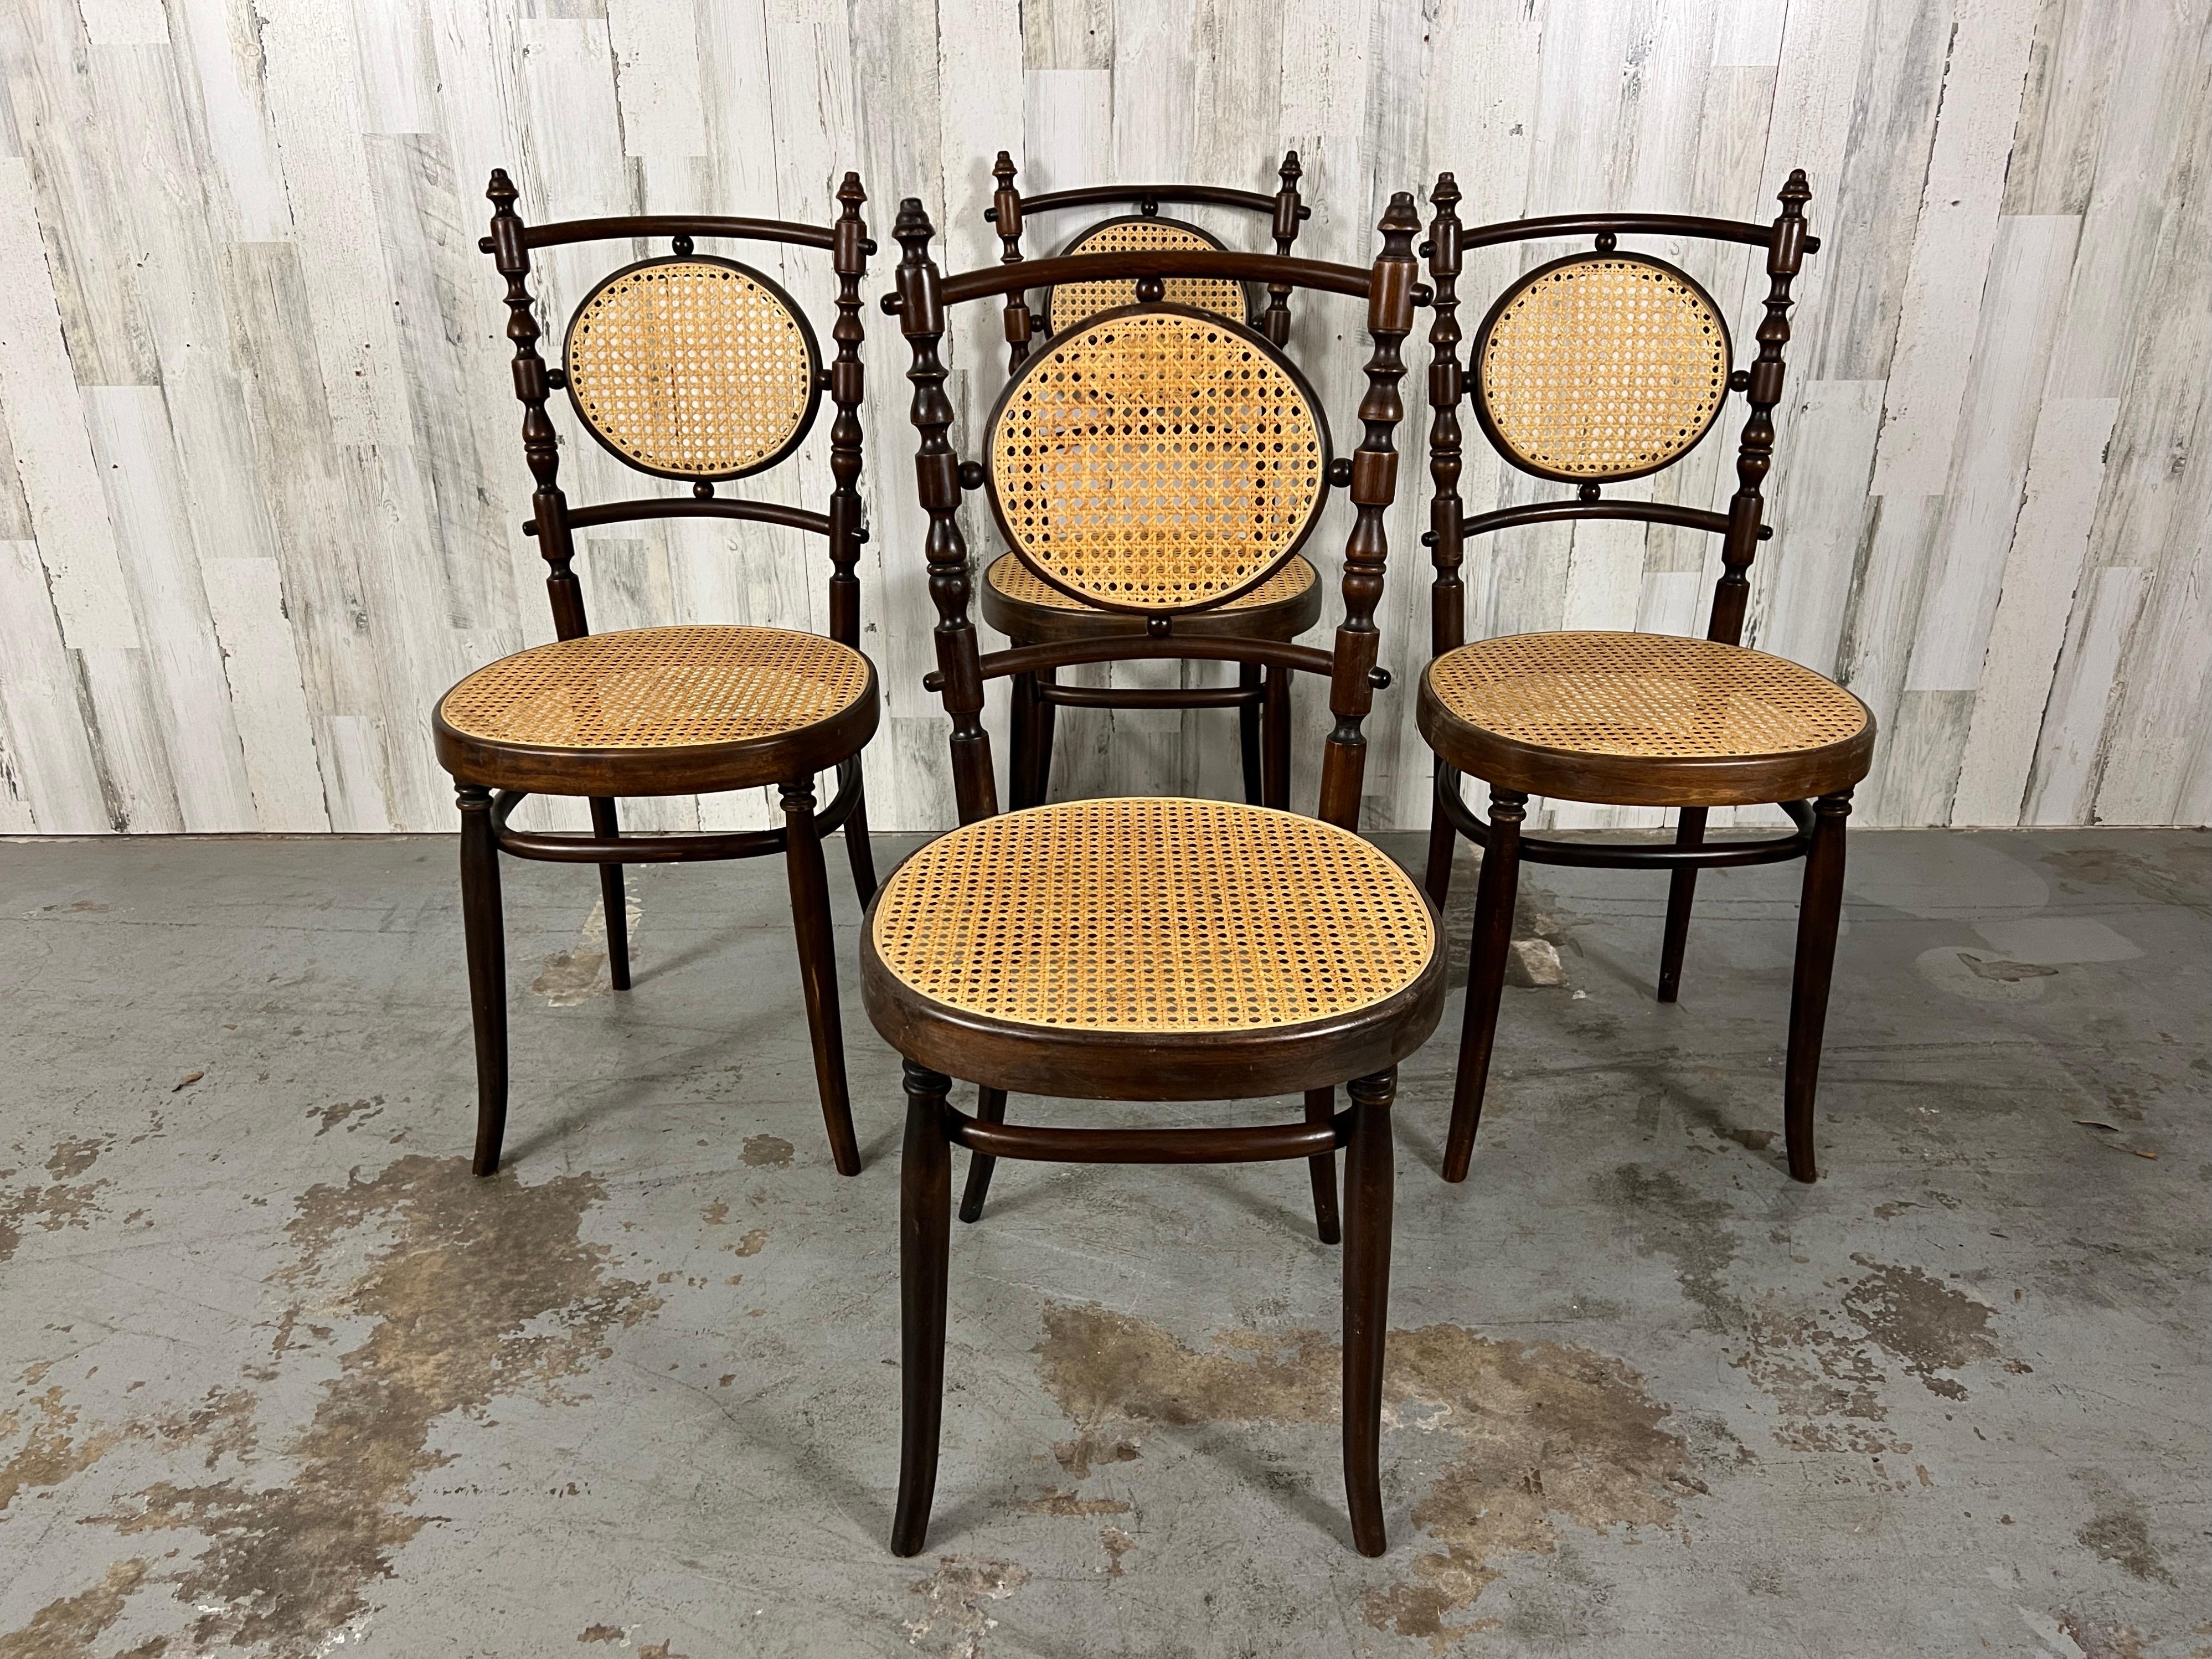 Schöner Satz von vier Bugholz-Esszimmerstühlen des italienischen Designers Salvatore Leone. Die zweifarbige Beizung des Holzes verleiht diesen sehr robusten Petit Chairs eine rustikale Eleganz.